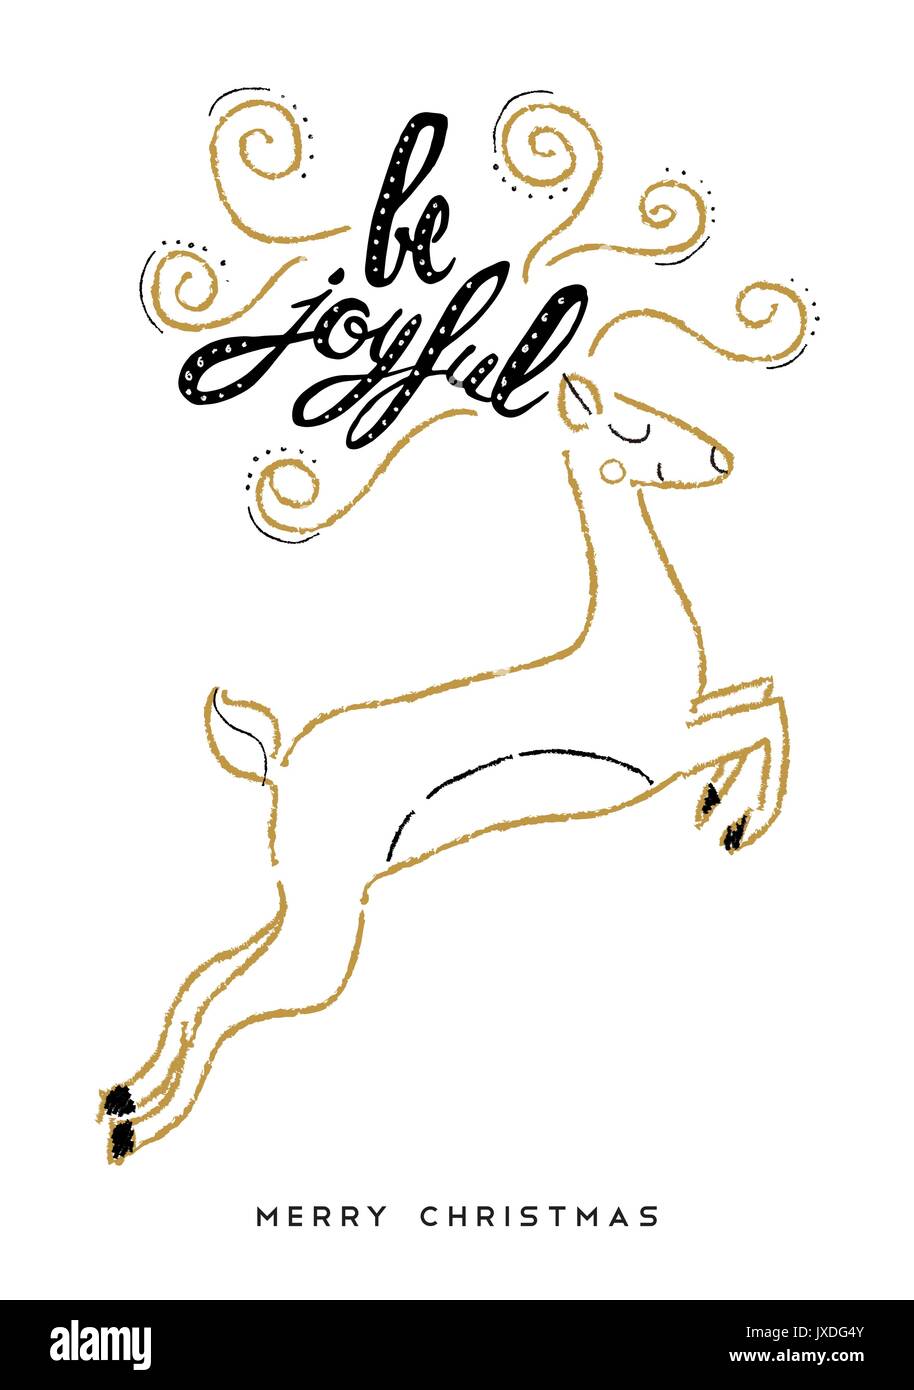 Süße Weihnachten Grußkarte Design für die Ferienzeit mit Hand gezeichnet Rentiere und Typografie. Kreative vintage Kalligraphie zitat Abbildung. EPS 10. Stock Vektor